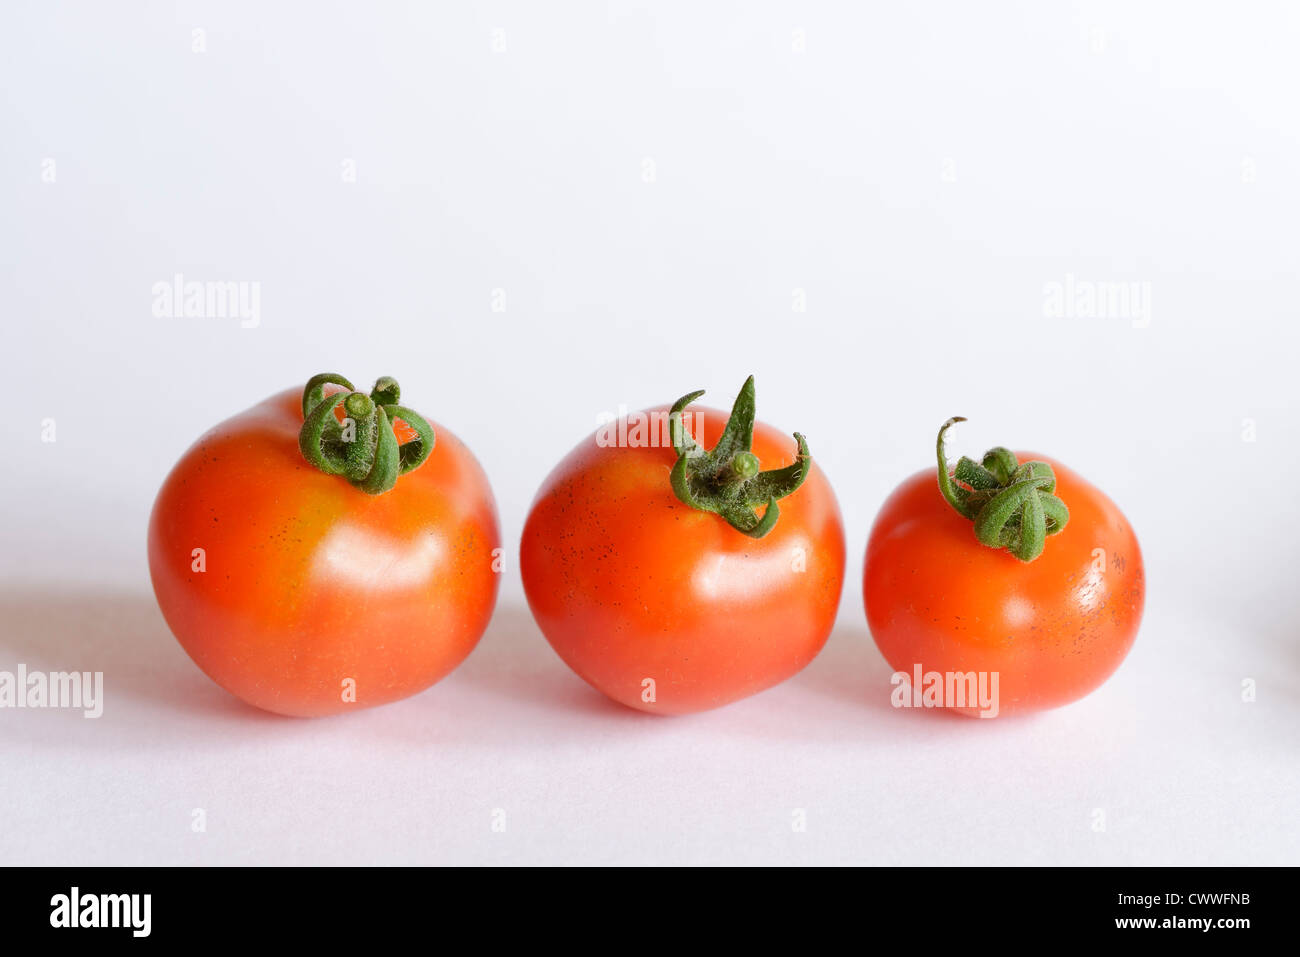 Three Gardeners Delight tomatoes Stock Photo